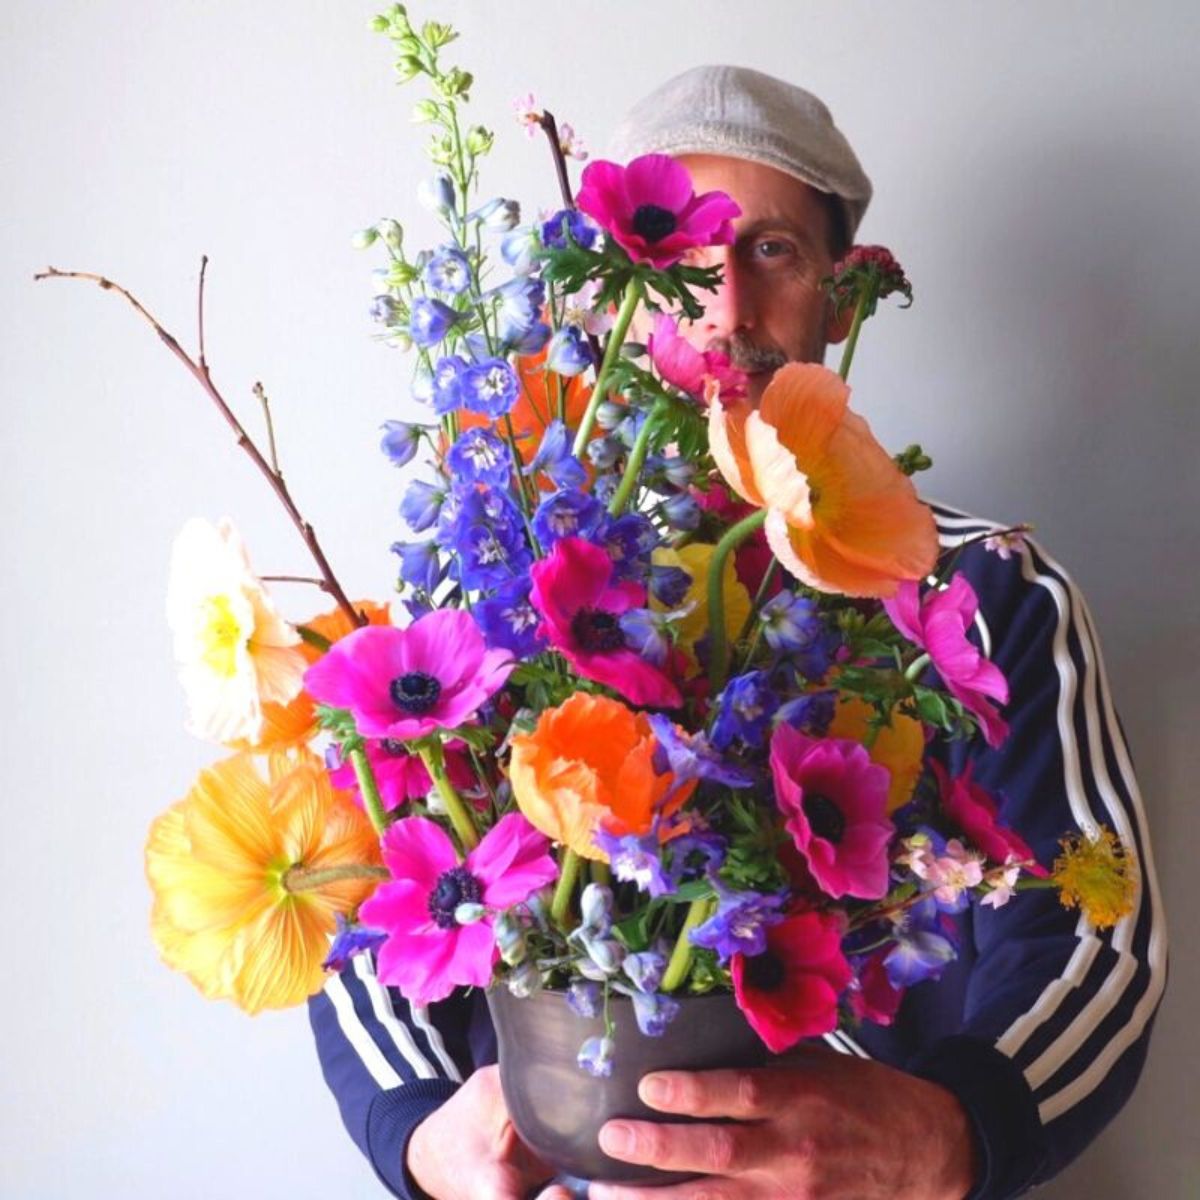 Florist TJ McGrath with colorful flowers